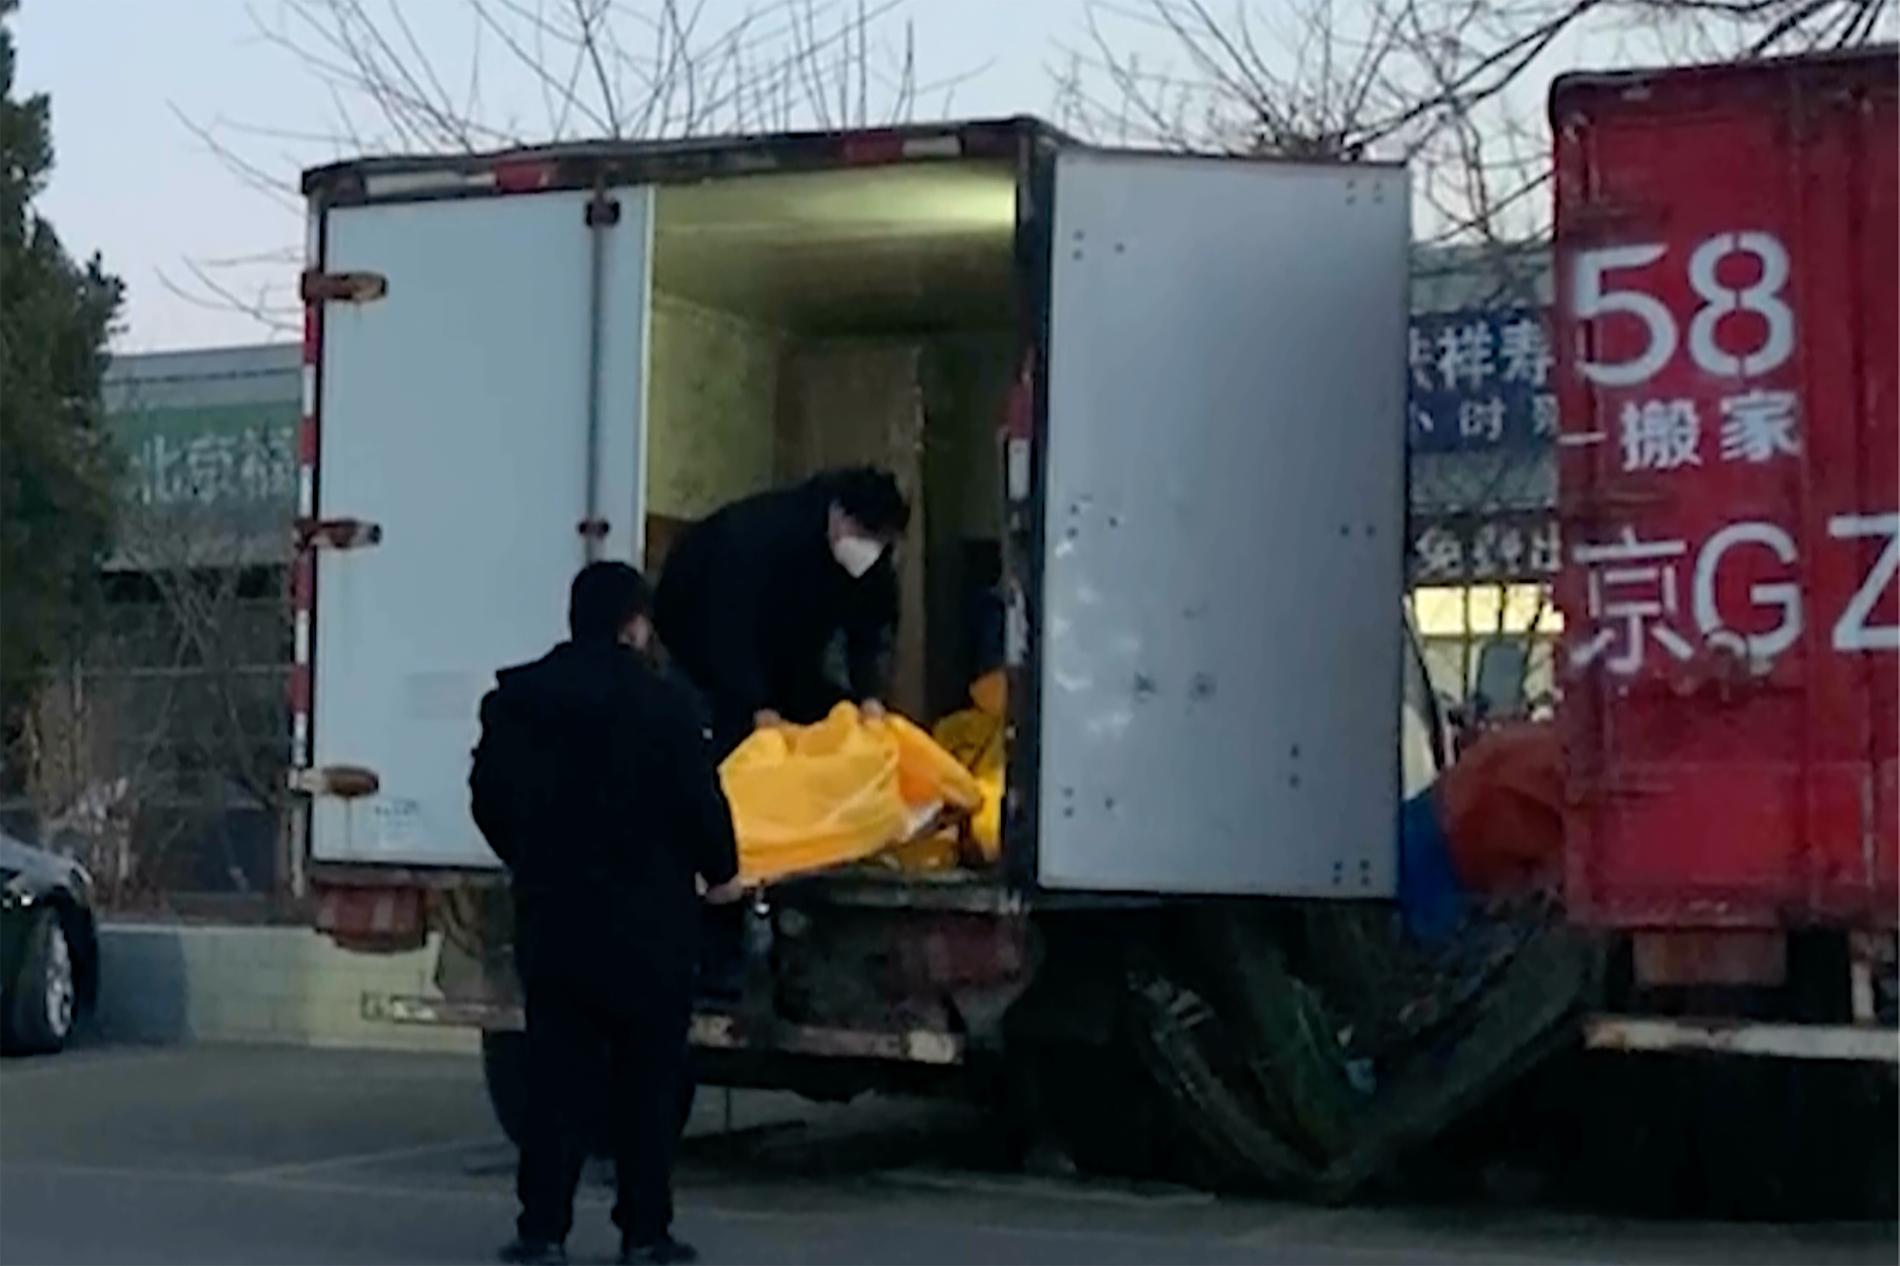 Döda i liksäckar lastas i ett fordon vid en begravningsbyrå i Peking. Arkivbild.